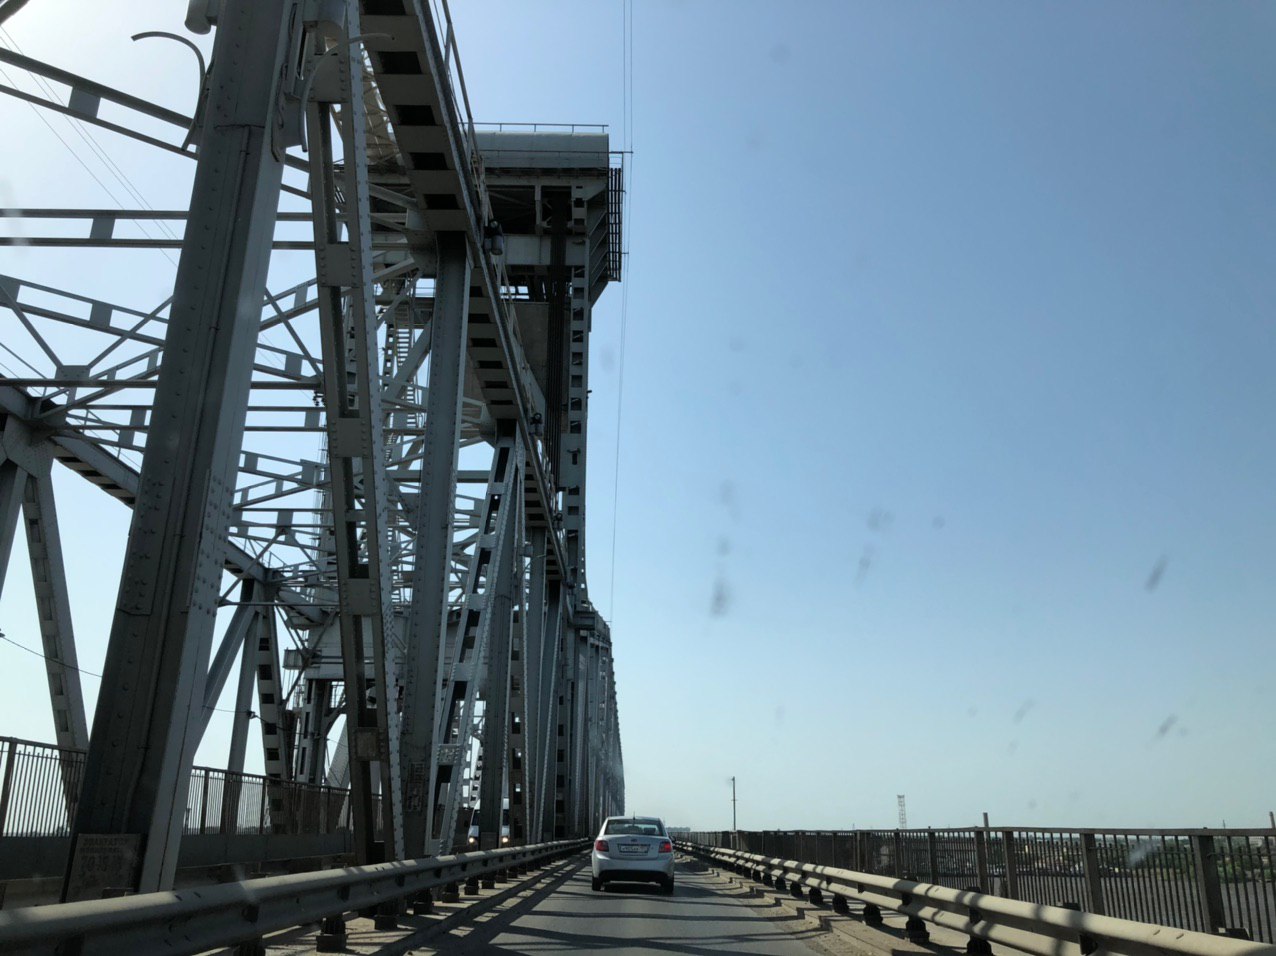 Для провода судов c 10:00 до 12:00 18 июня будет разведён совмещённый автожелезнодорожный мост через реку Волга (Старый мост) в городе Астрахани. Просим водителей заранее планировать маршрут движения.